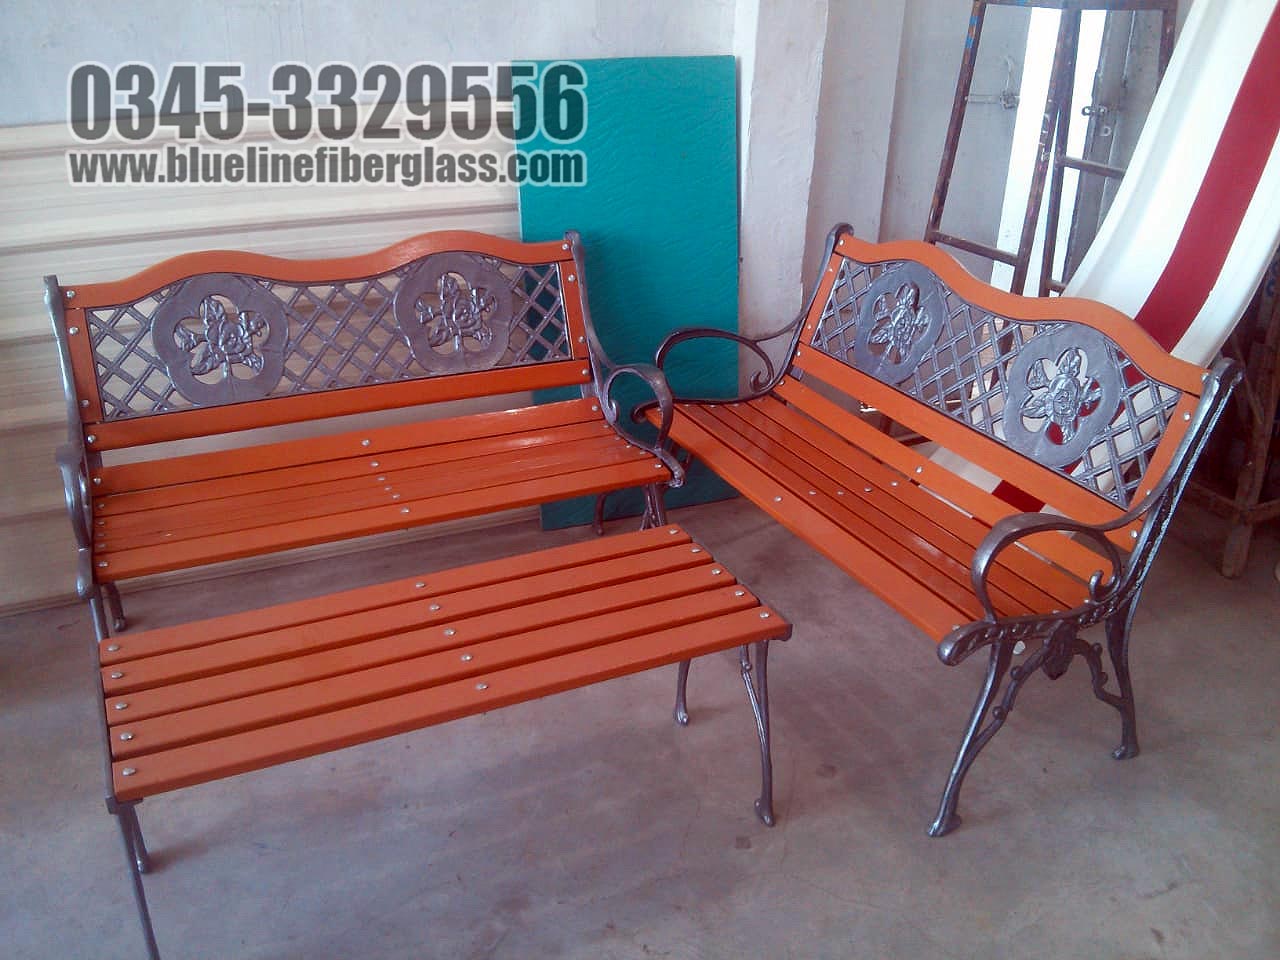 Garden Bench  Garden Furniture outdoor furniture Blue Line Fiberglass Karachi Pakistan